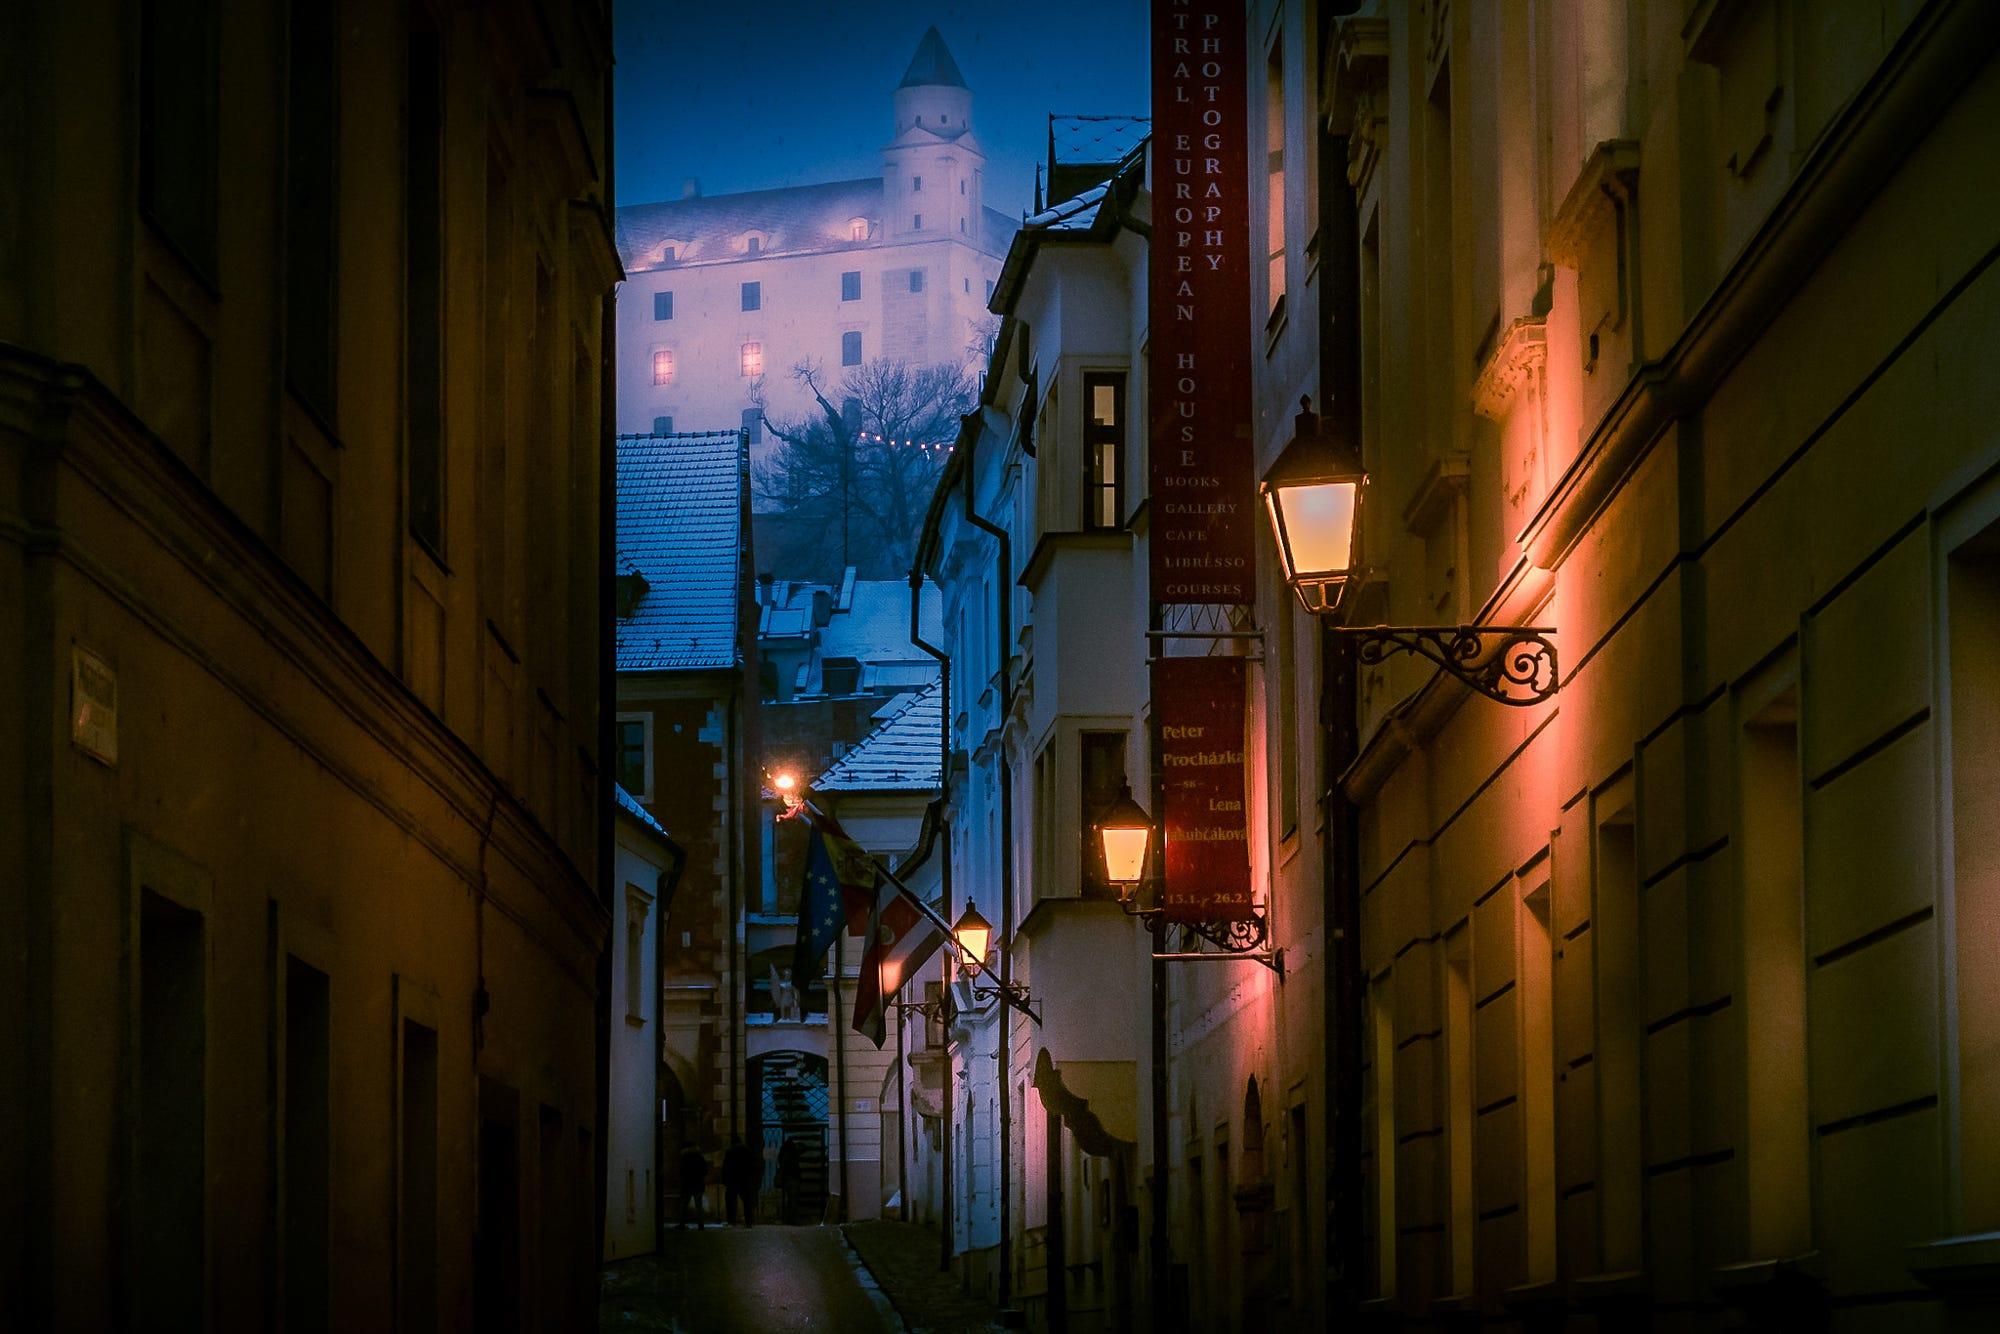 Slovekia#1 - Bratislava Castle